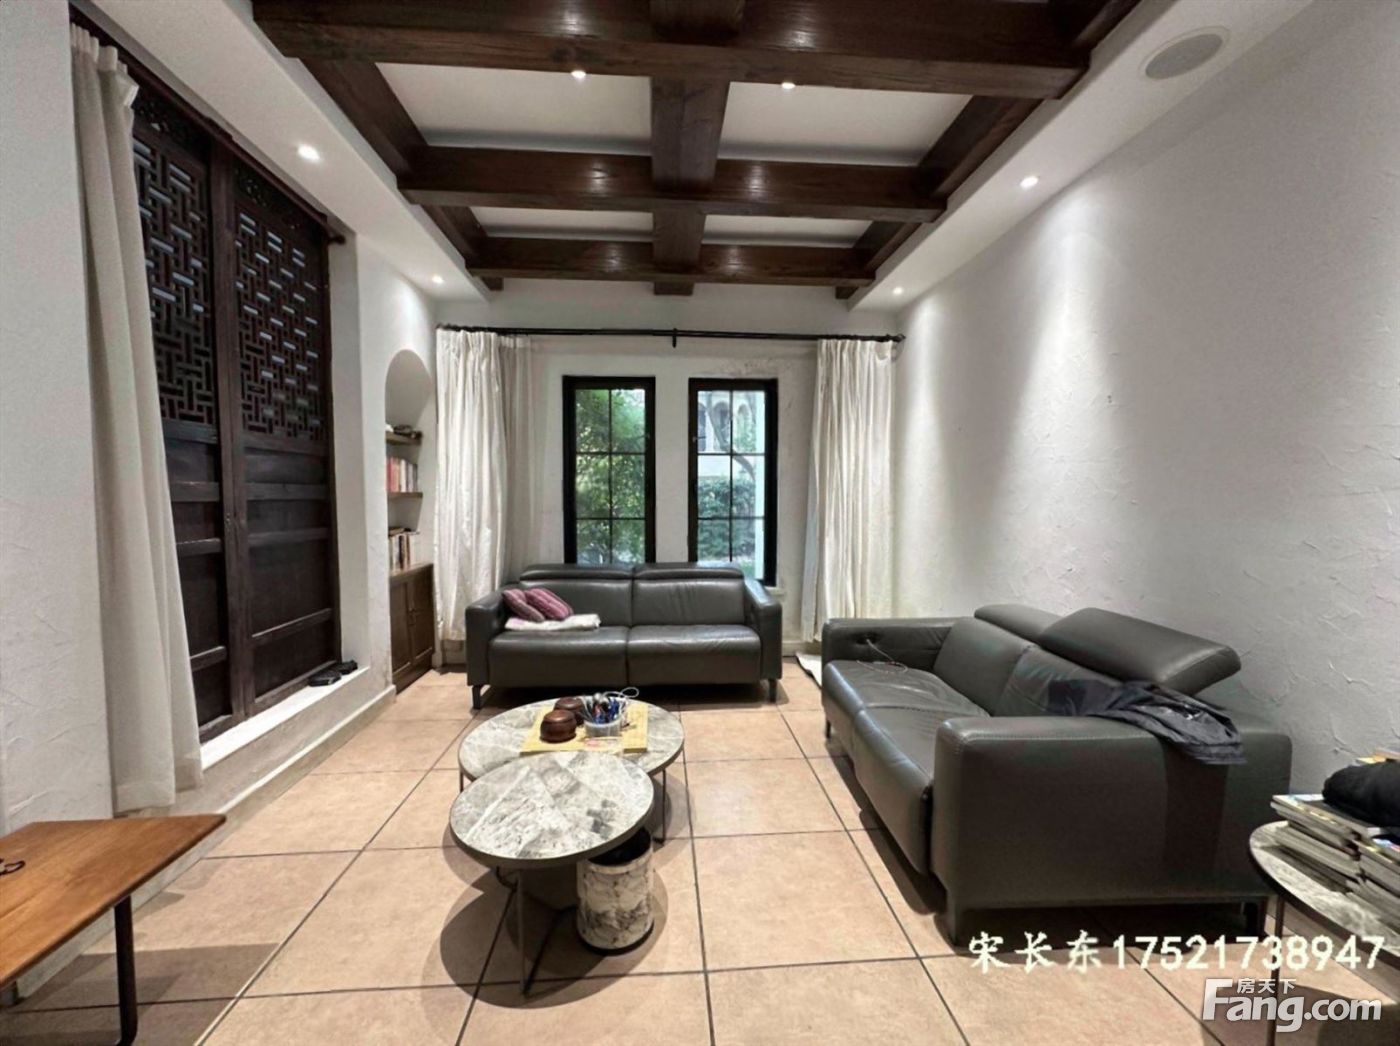 圣马新出好房丨全屋地暖空调丨5房设计丨南花园600平中芯